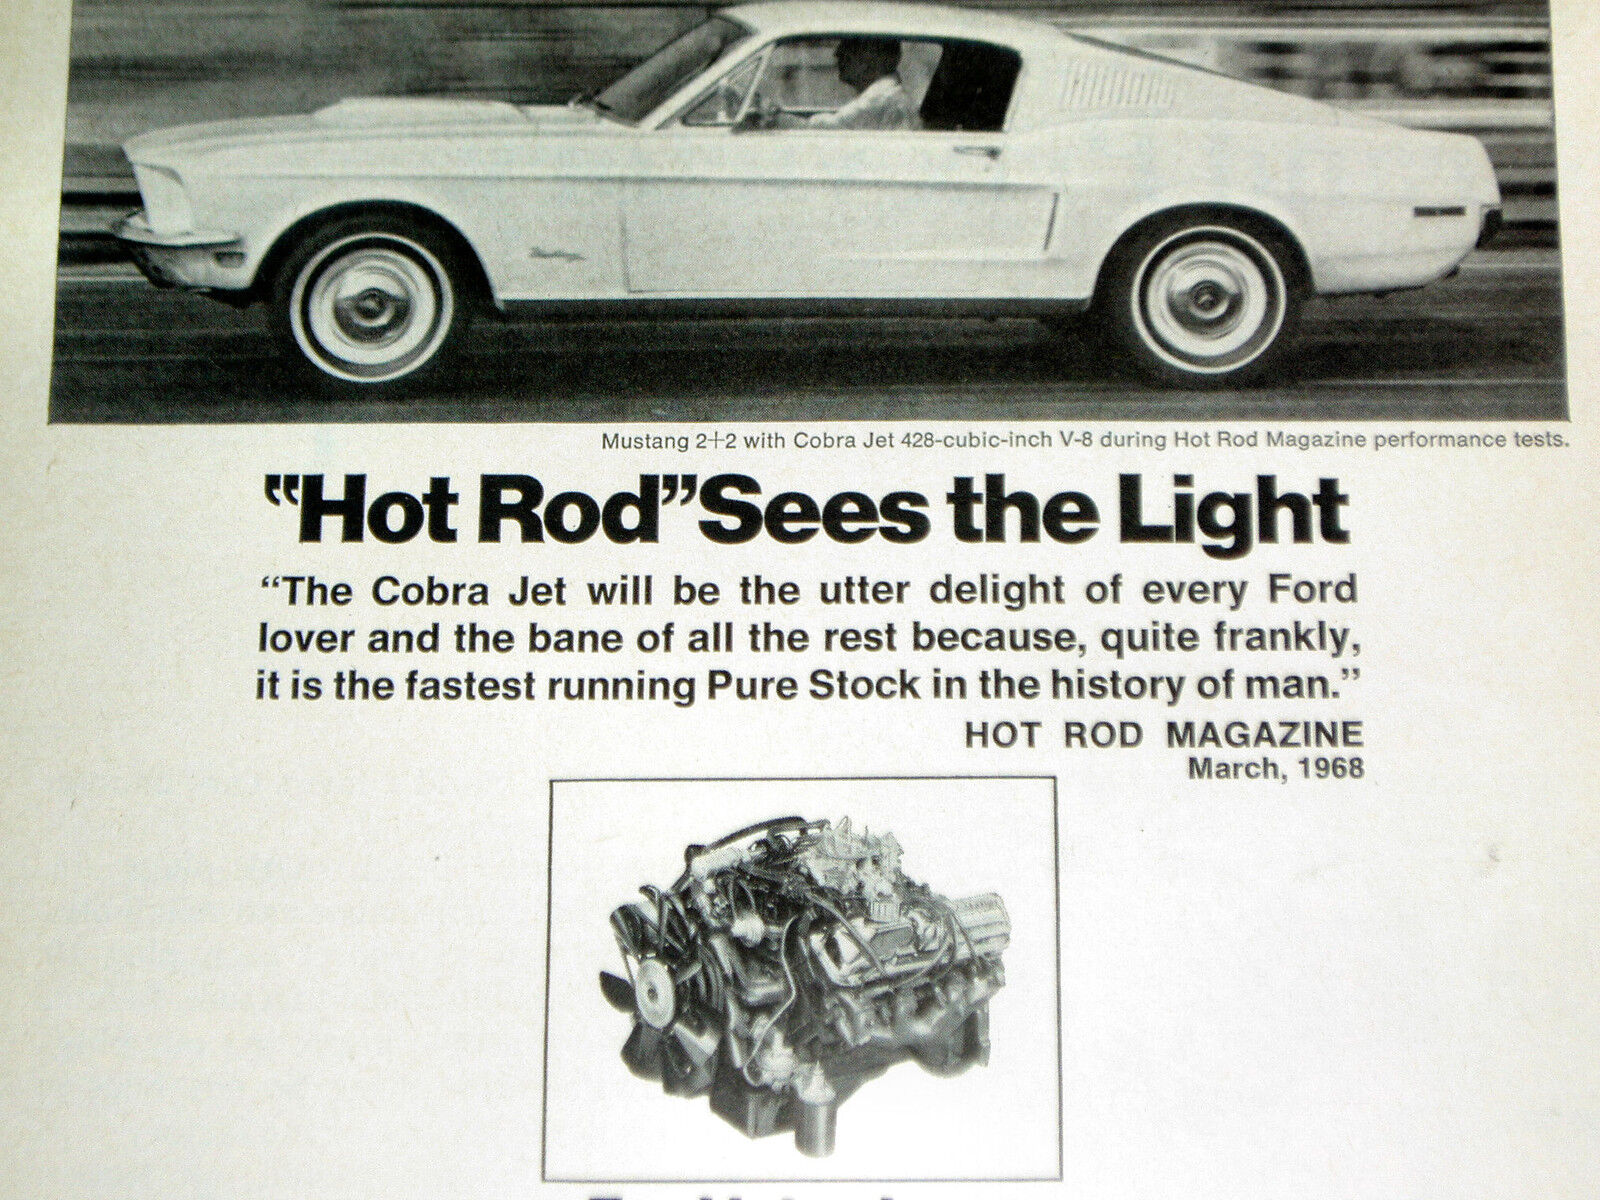 1968 FORD MUSTANG 2+2 COBRA JET 428 V8 ENGINE VINTAGE AD/poster/427/GT/1967/CJ